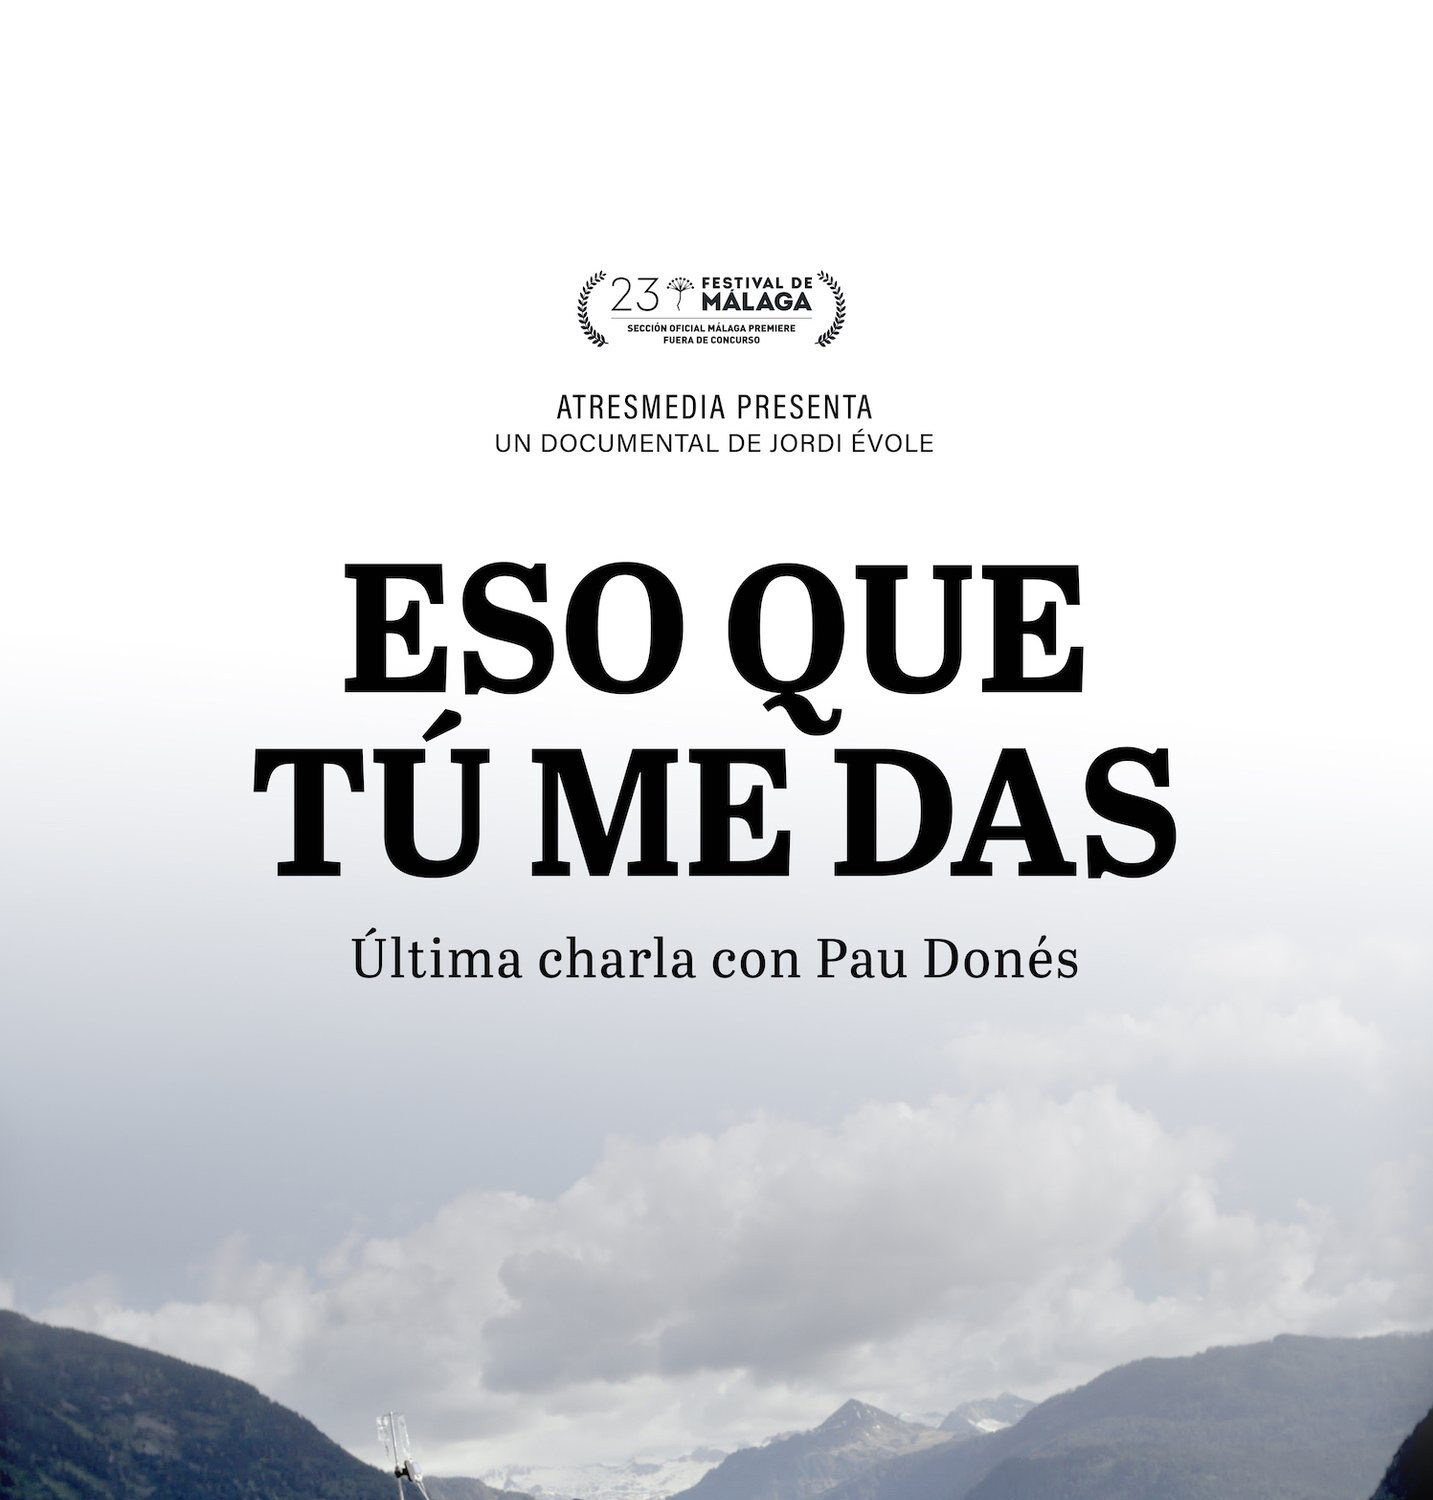 Se podrá ver en cines el documental con Jordi Évole y Pau Donés